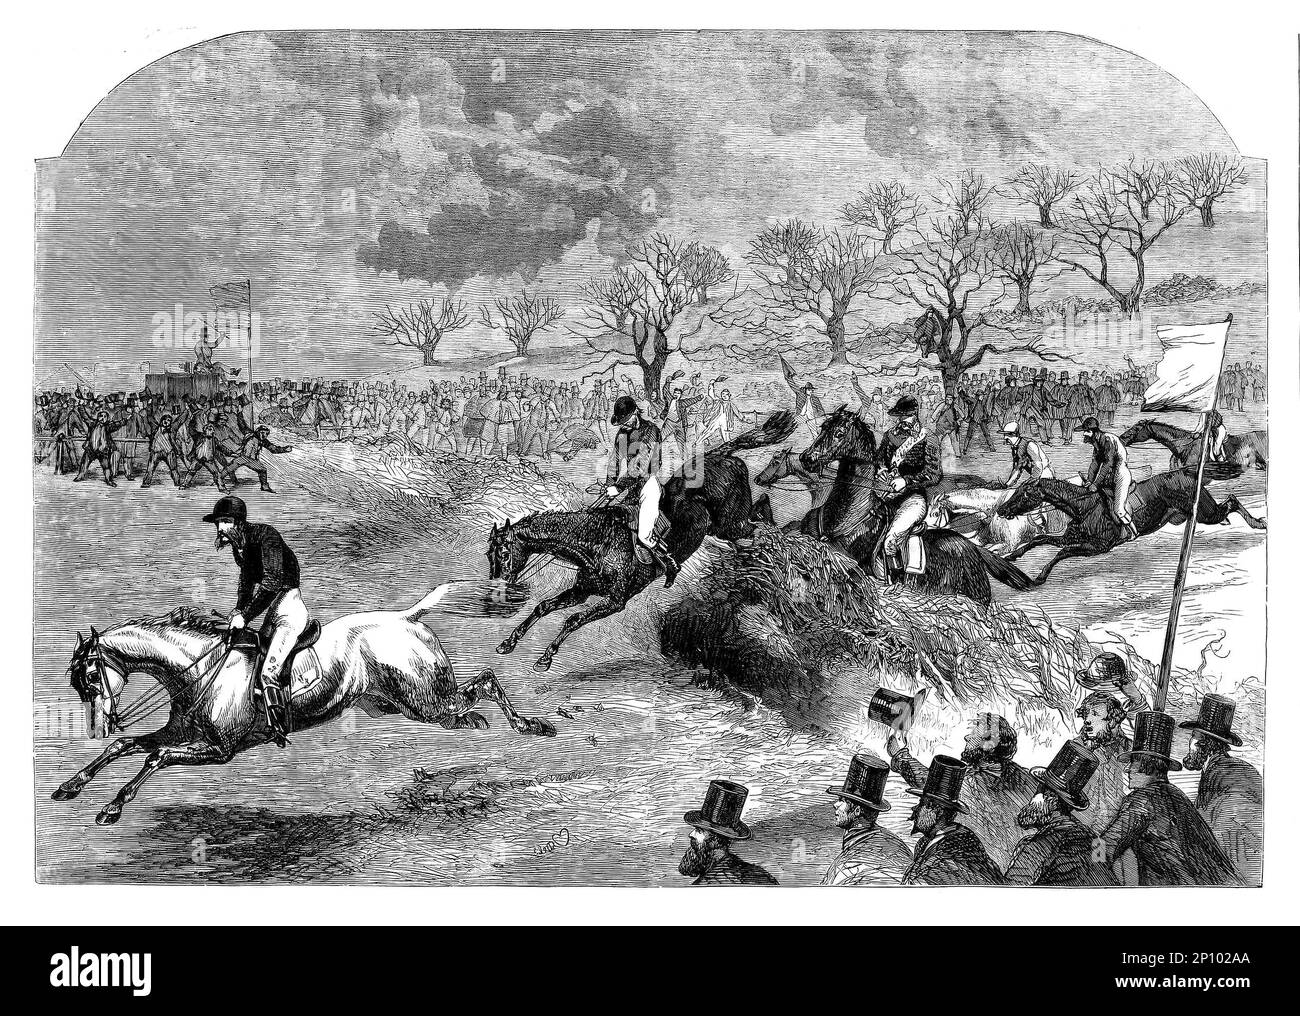 L'excitation et l'action de la course de chevaux de la coupe d'or militaire Grand, pendant les Northampton Steeple Chases de 1860, dessiné par l'artiste britannique Harrison William Weir (1824-1906) Banque D'Images